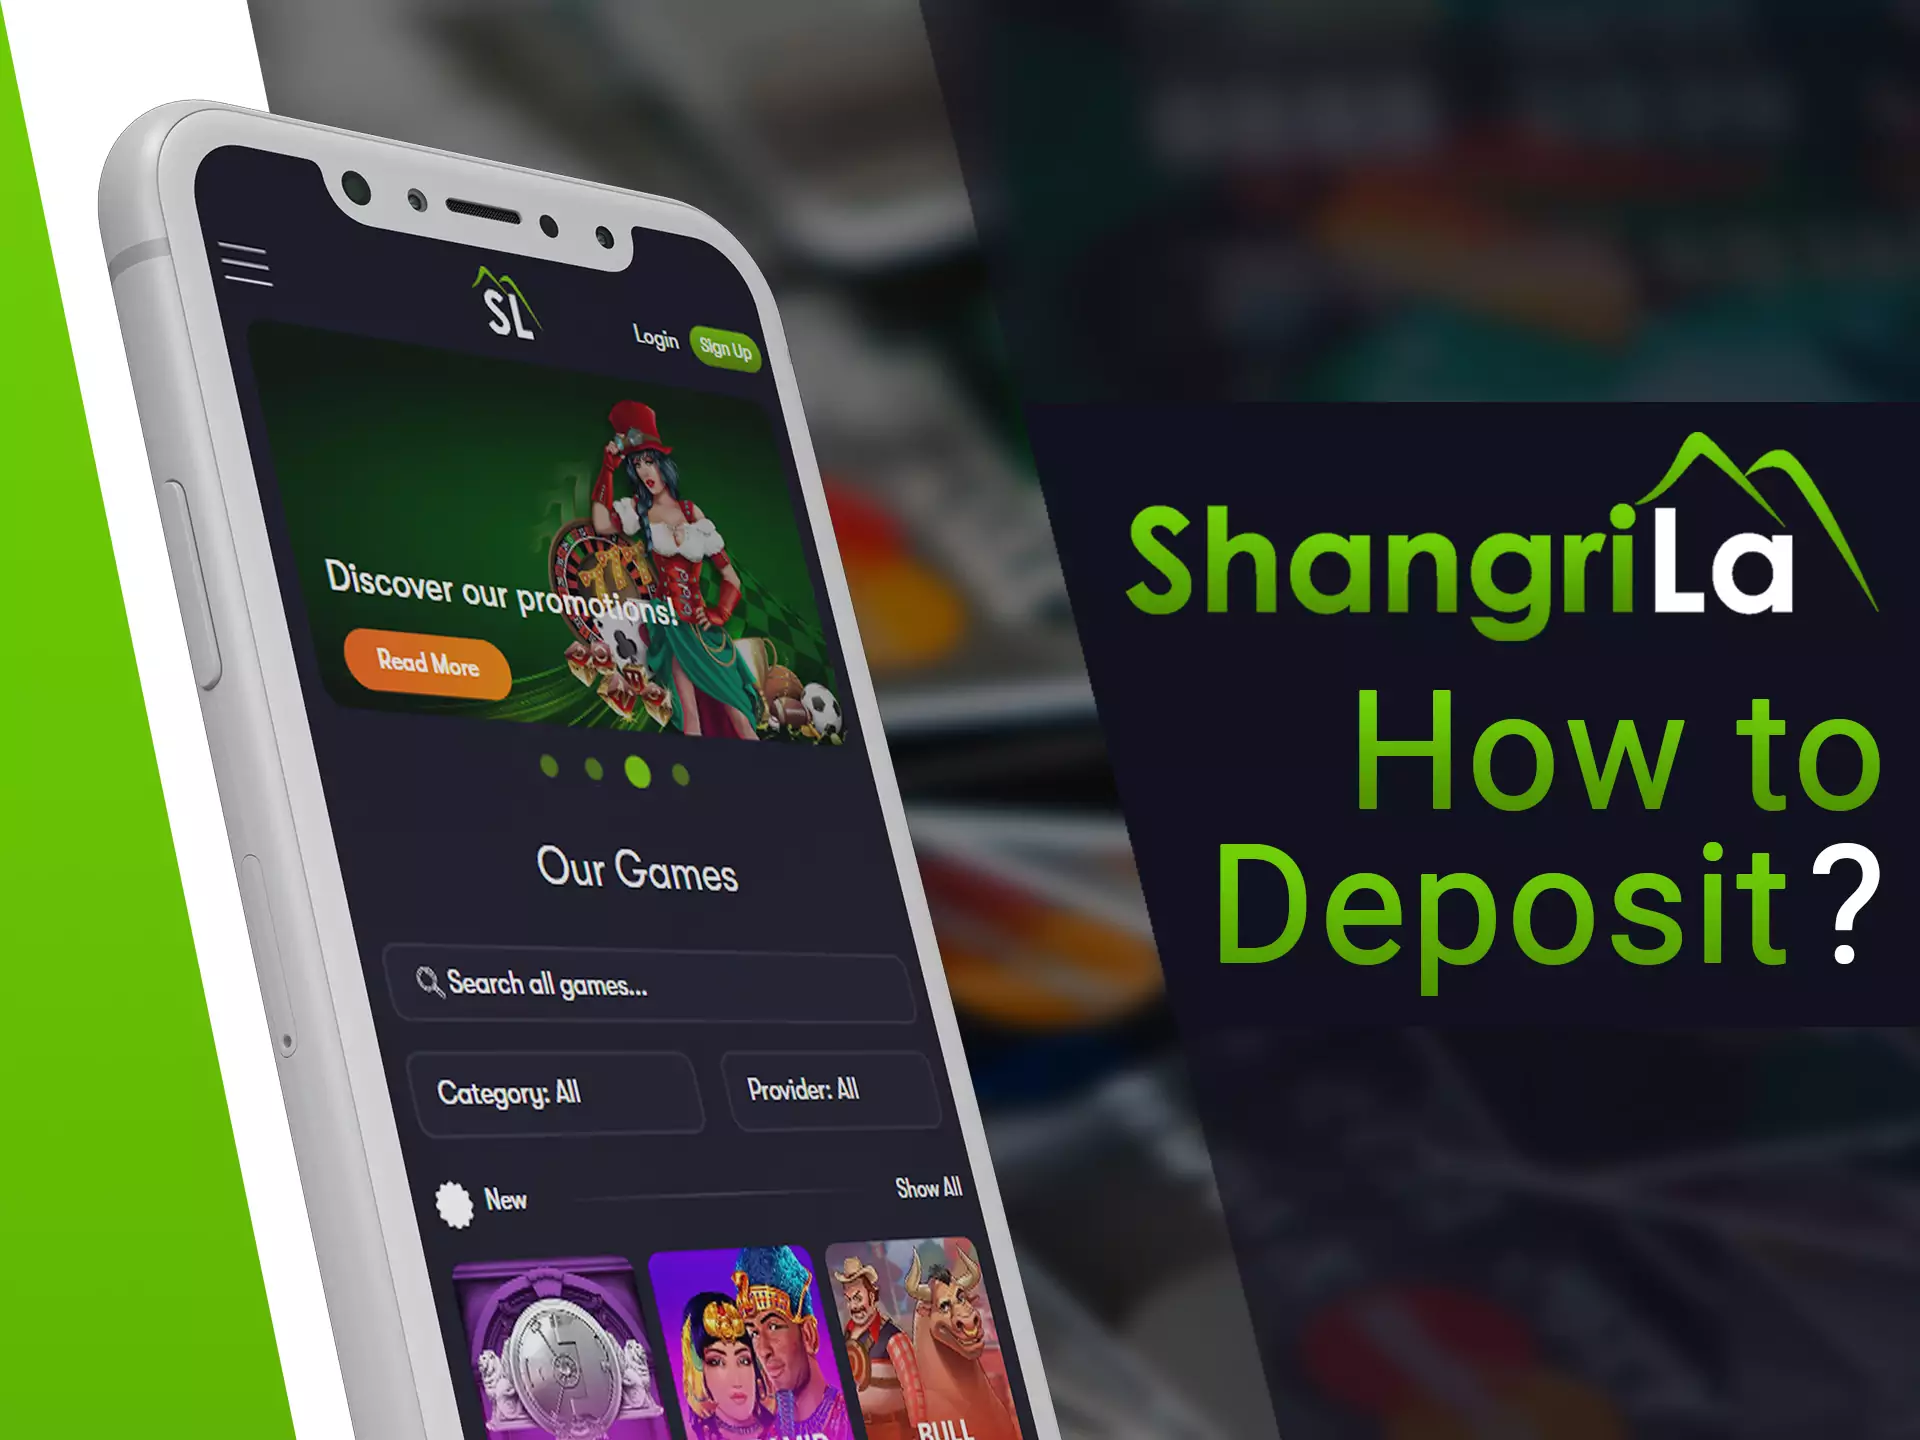 Deposit process in Shangri La app is simple.